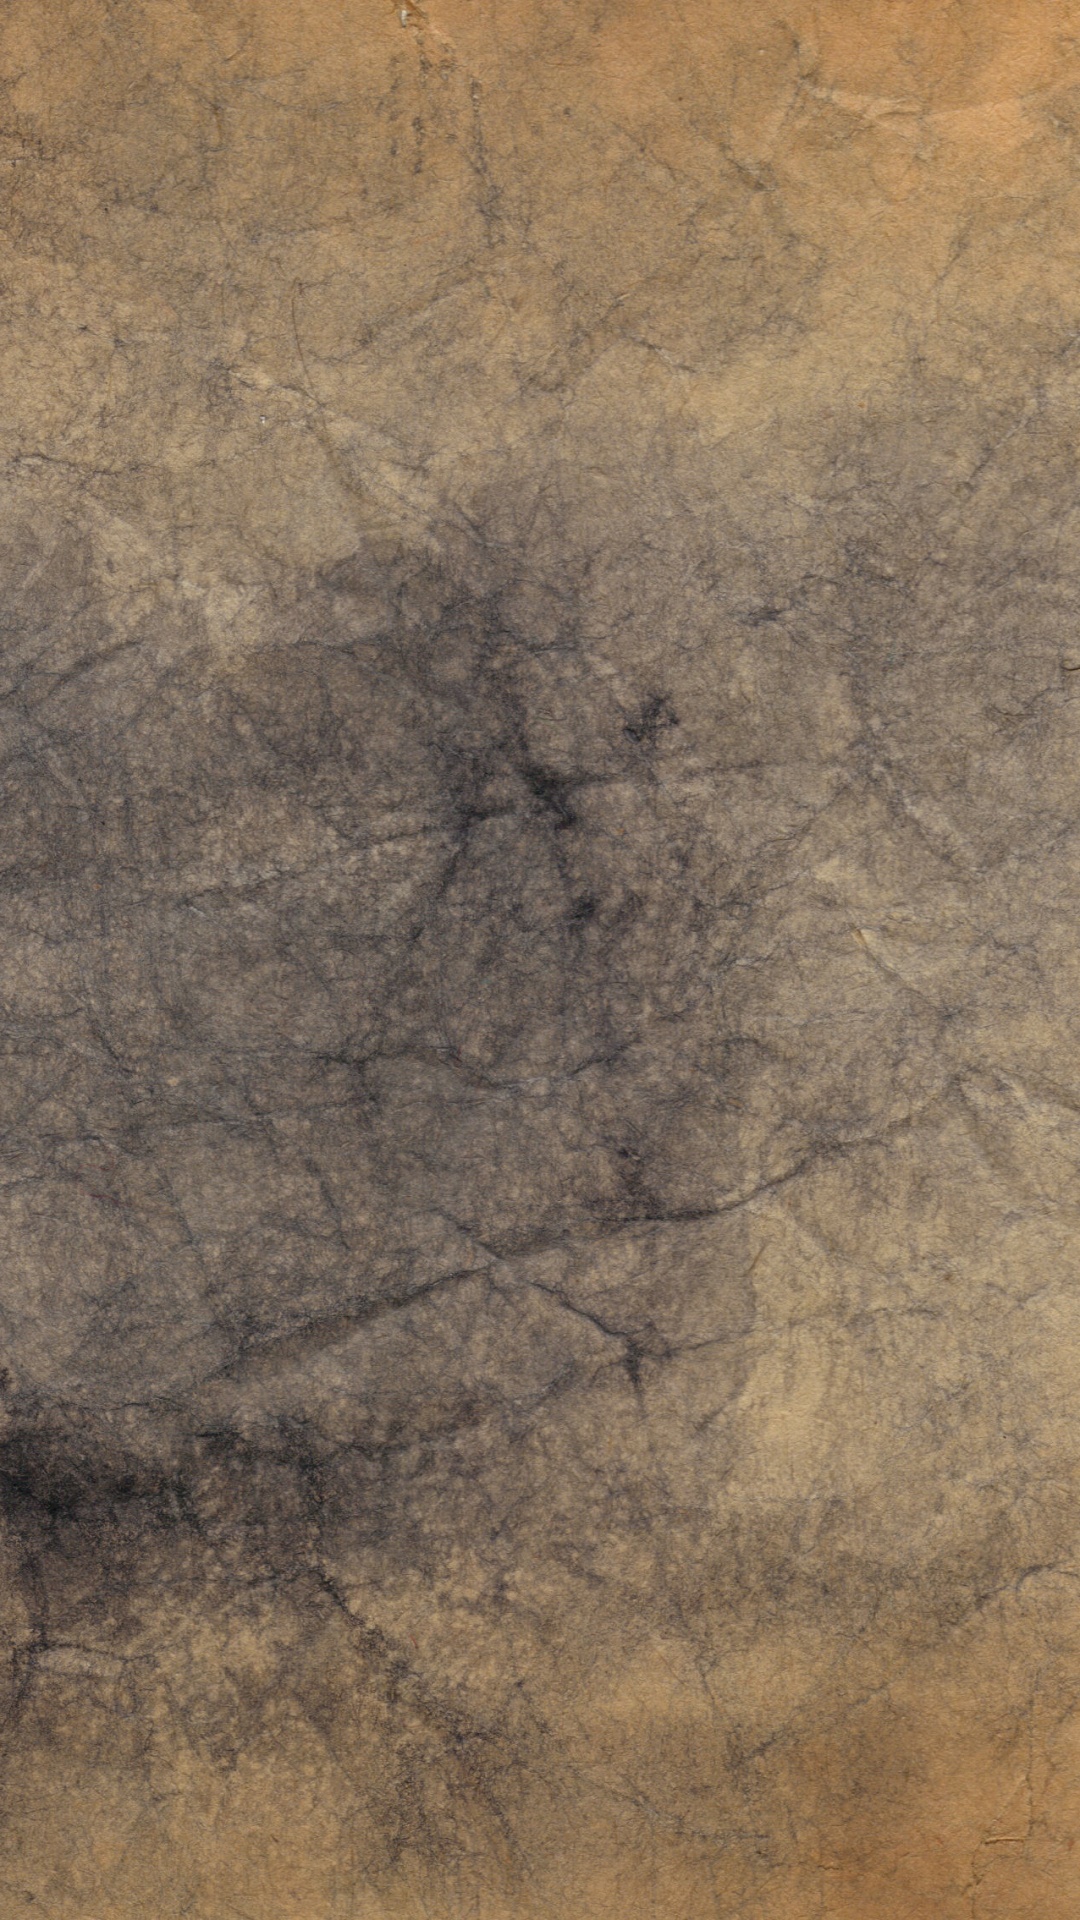 Schwarzer Kahler Baum Auf Braunem Sand. Wallpaper in 1080x1920 Resolution